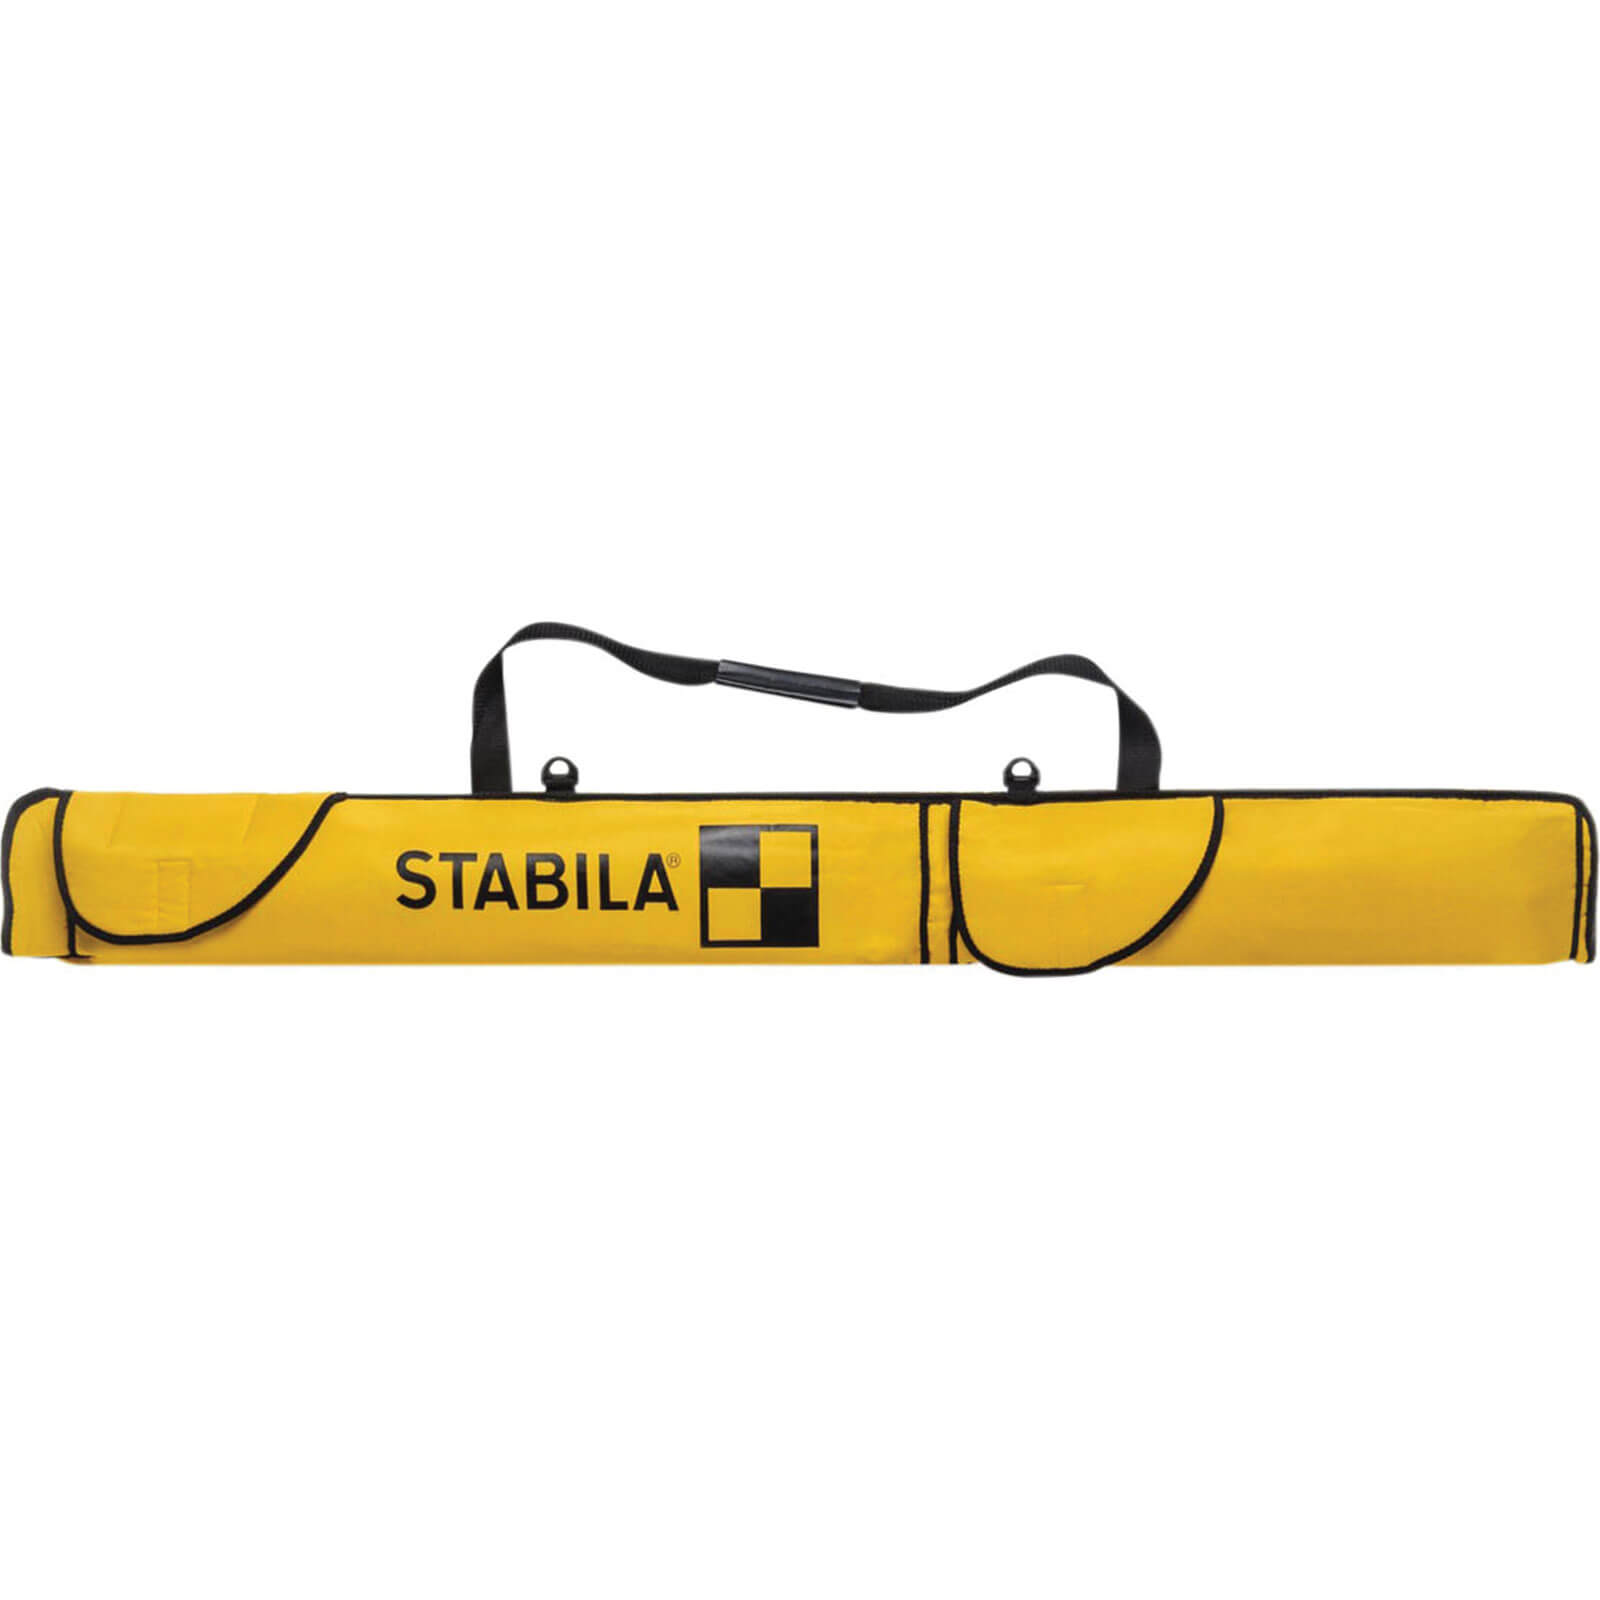 Stabila Combi Spirit Level Bag 78" / 200cm